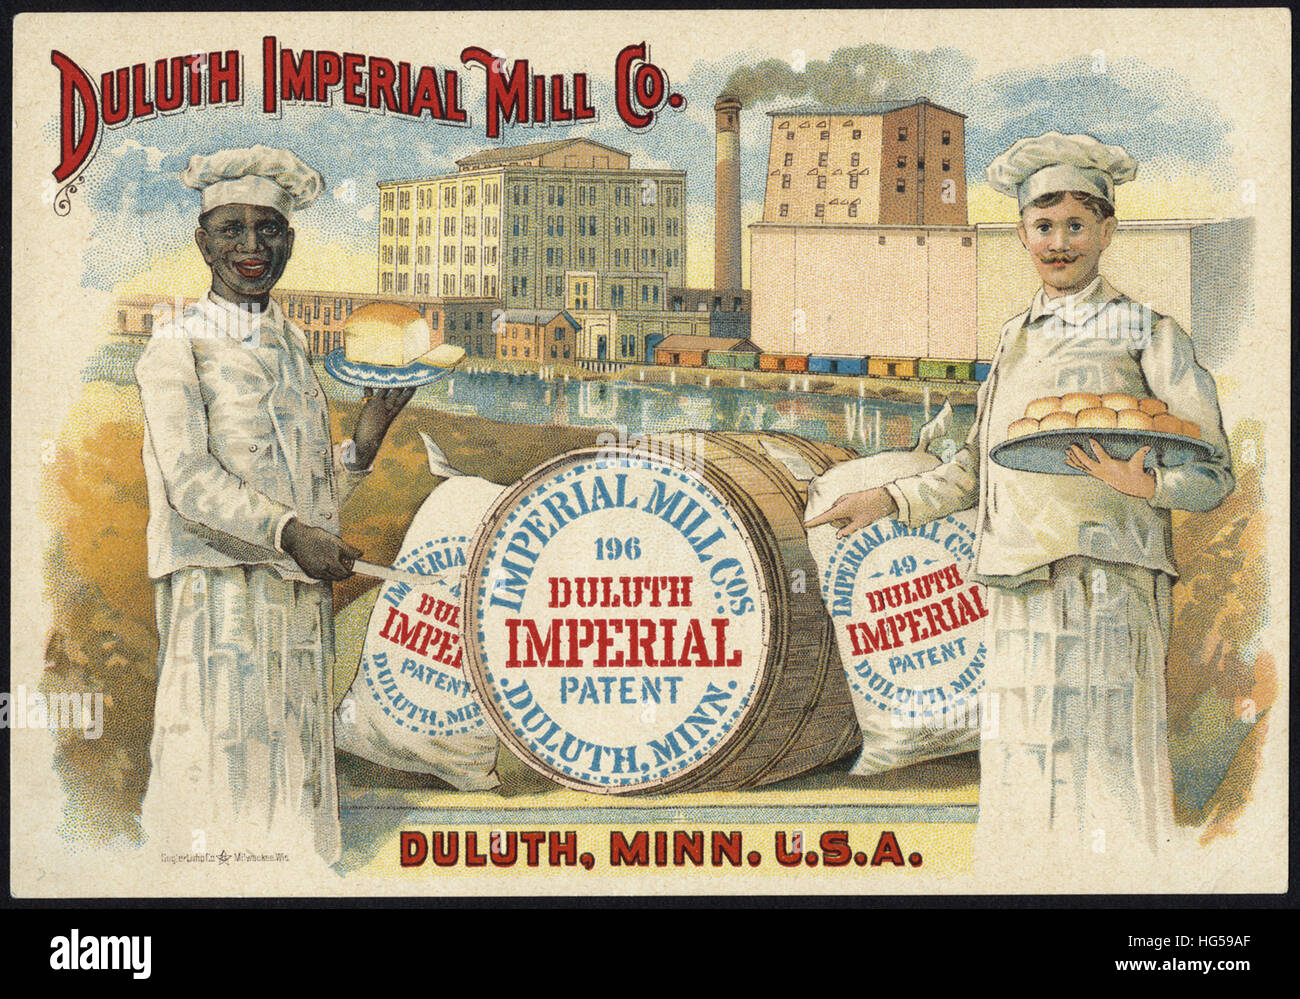 La cottura scheda commerciale - Duluth Imperial Mill Co. - Chi fa il miglior pane  Foto Stock